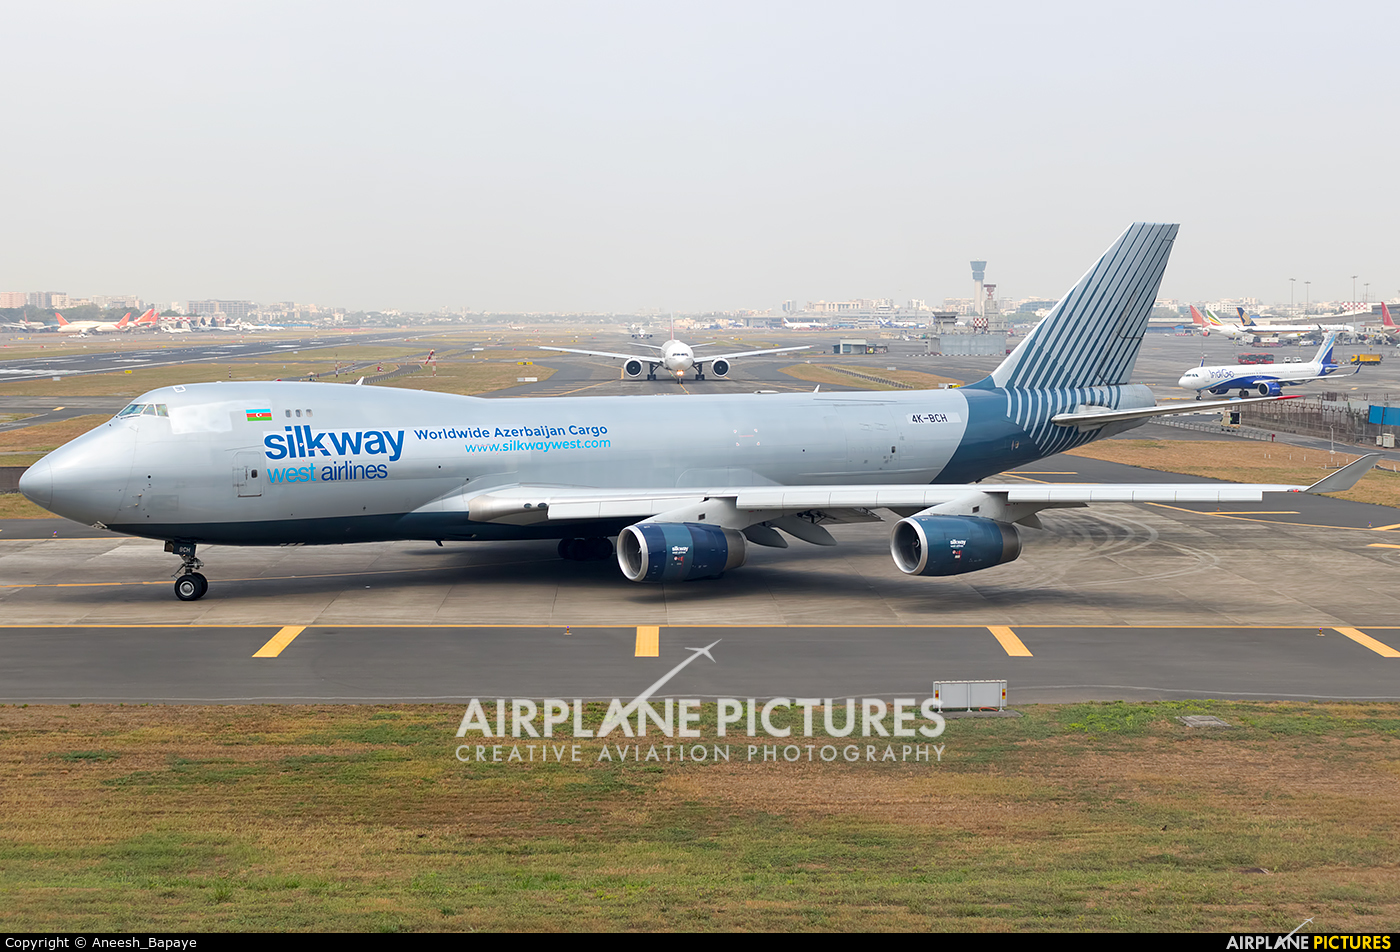 Silk Way West Airlines 4K-BCH aircraft at Mumbai - Chhatrapati Shivaji Intl